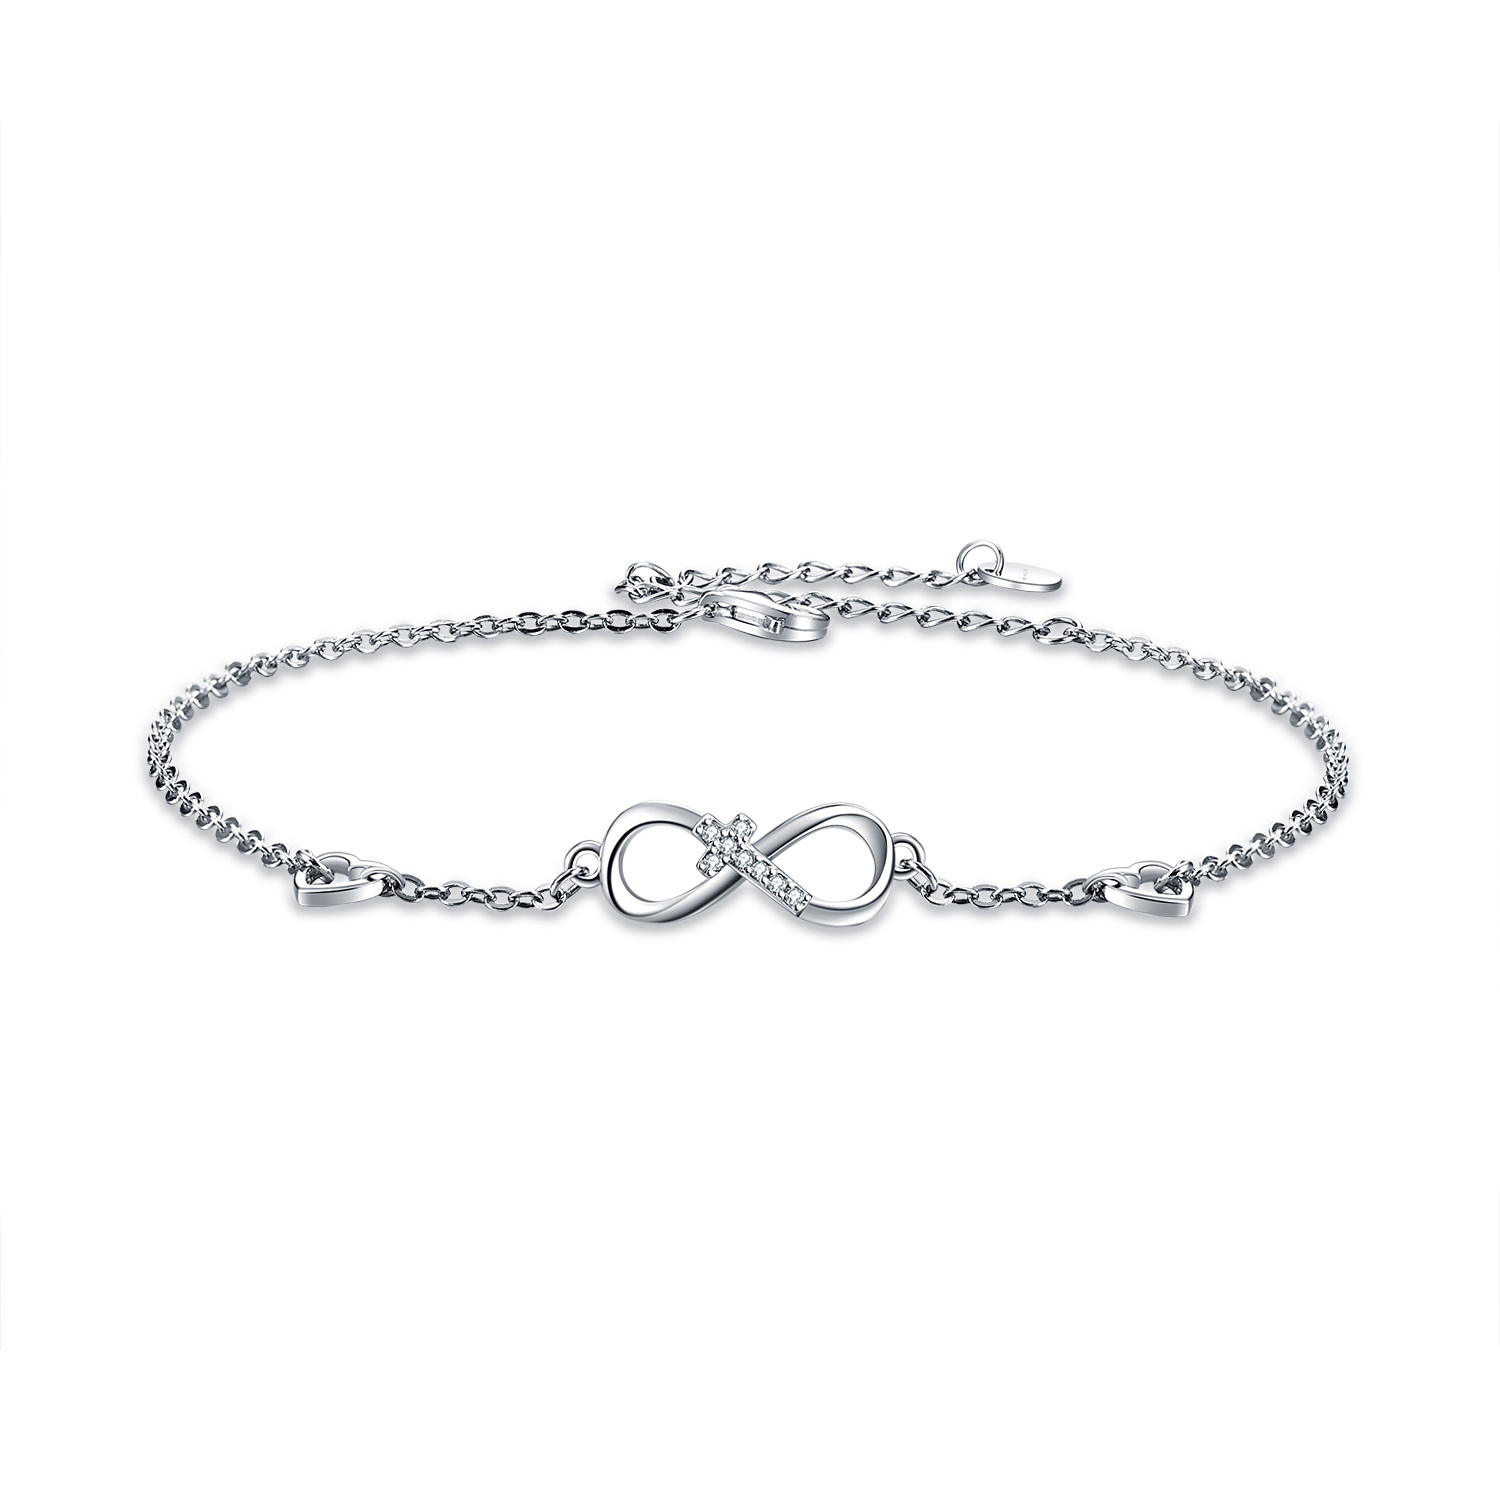 16277161553756f986a - 925 Sterling Silver Cubic Zirconia Infinity Cross Heart Bracelet For Women Girls Gifts